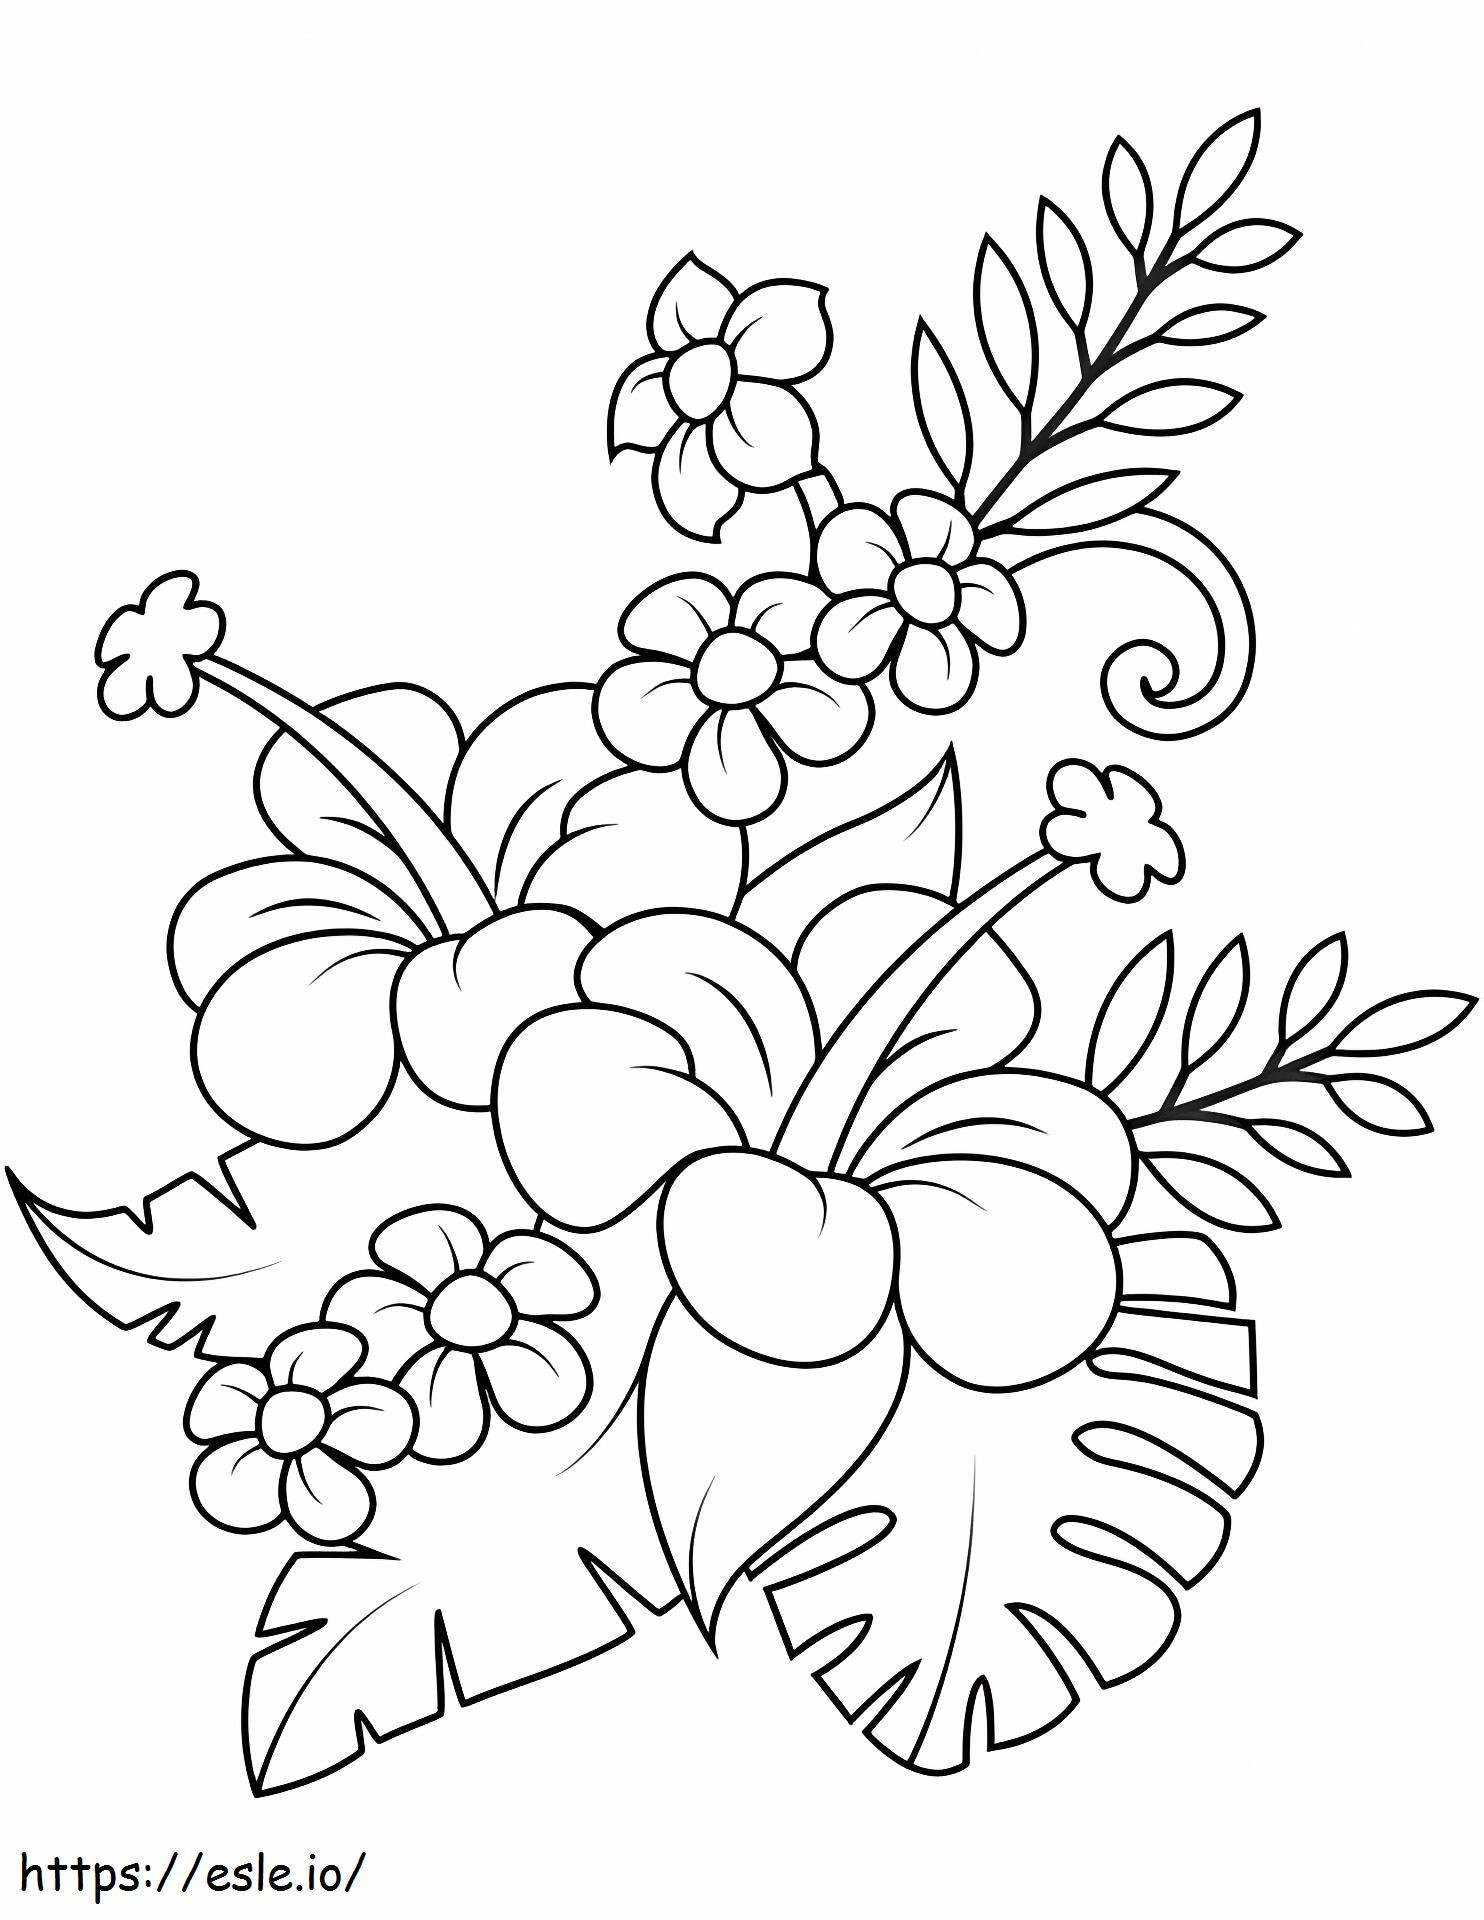 1527063860_Bouquet Com Hibisco E Folhas De Monstera para colorir